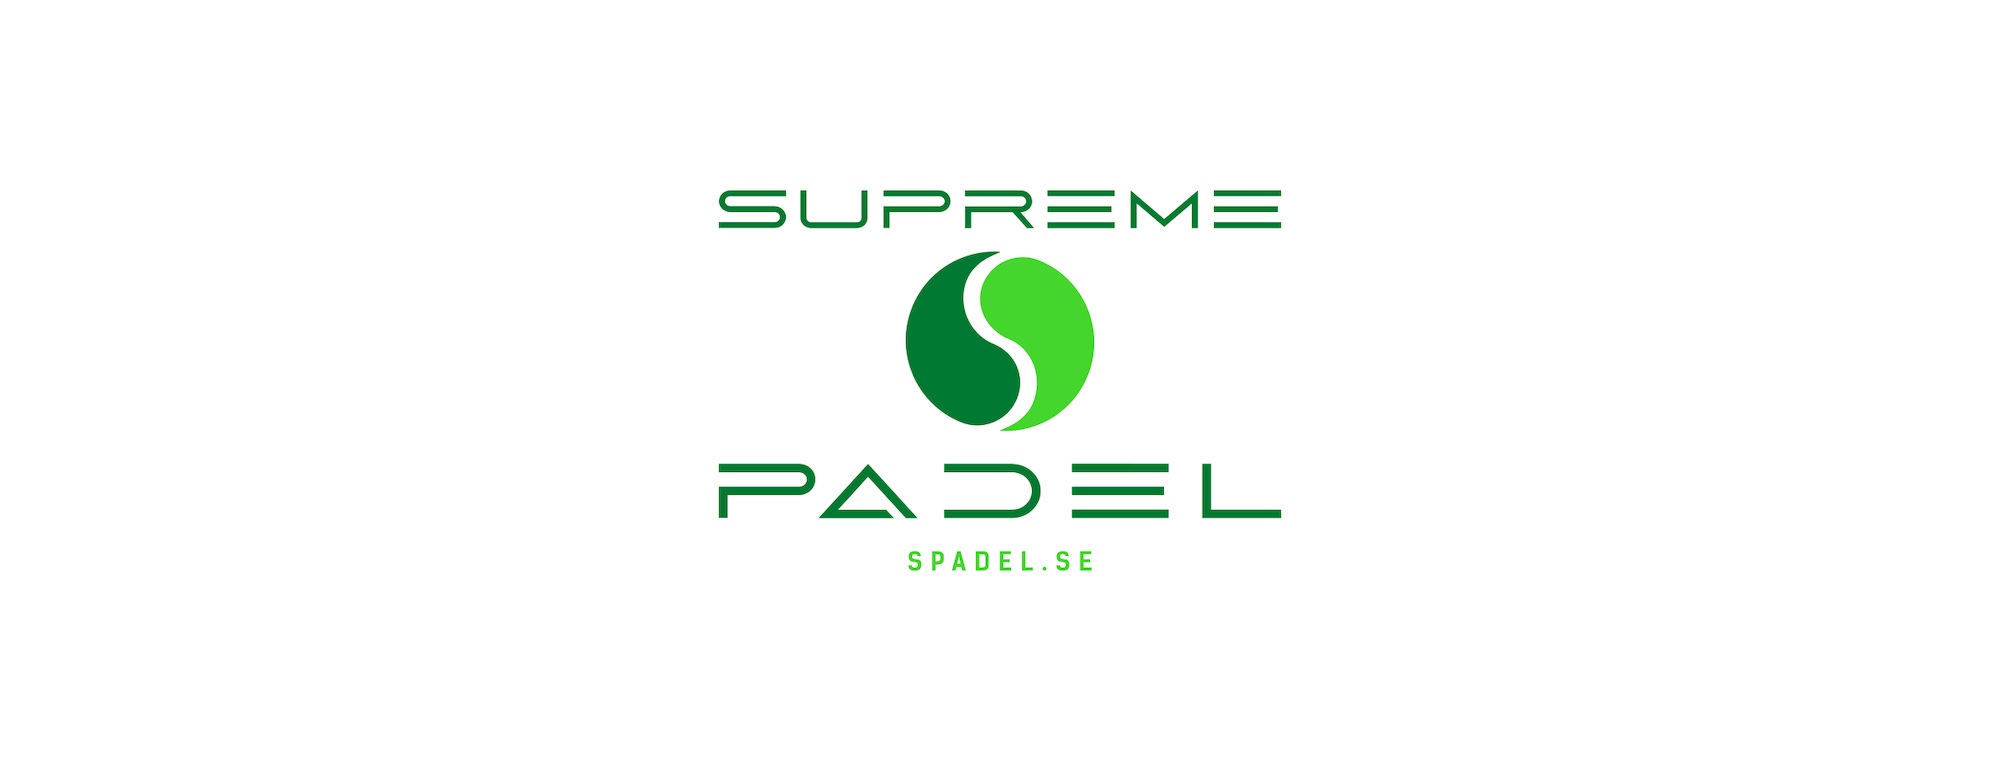 SUPREME PADEL SPADEL.SE